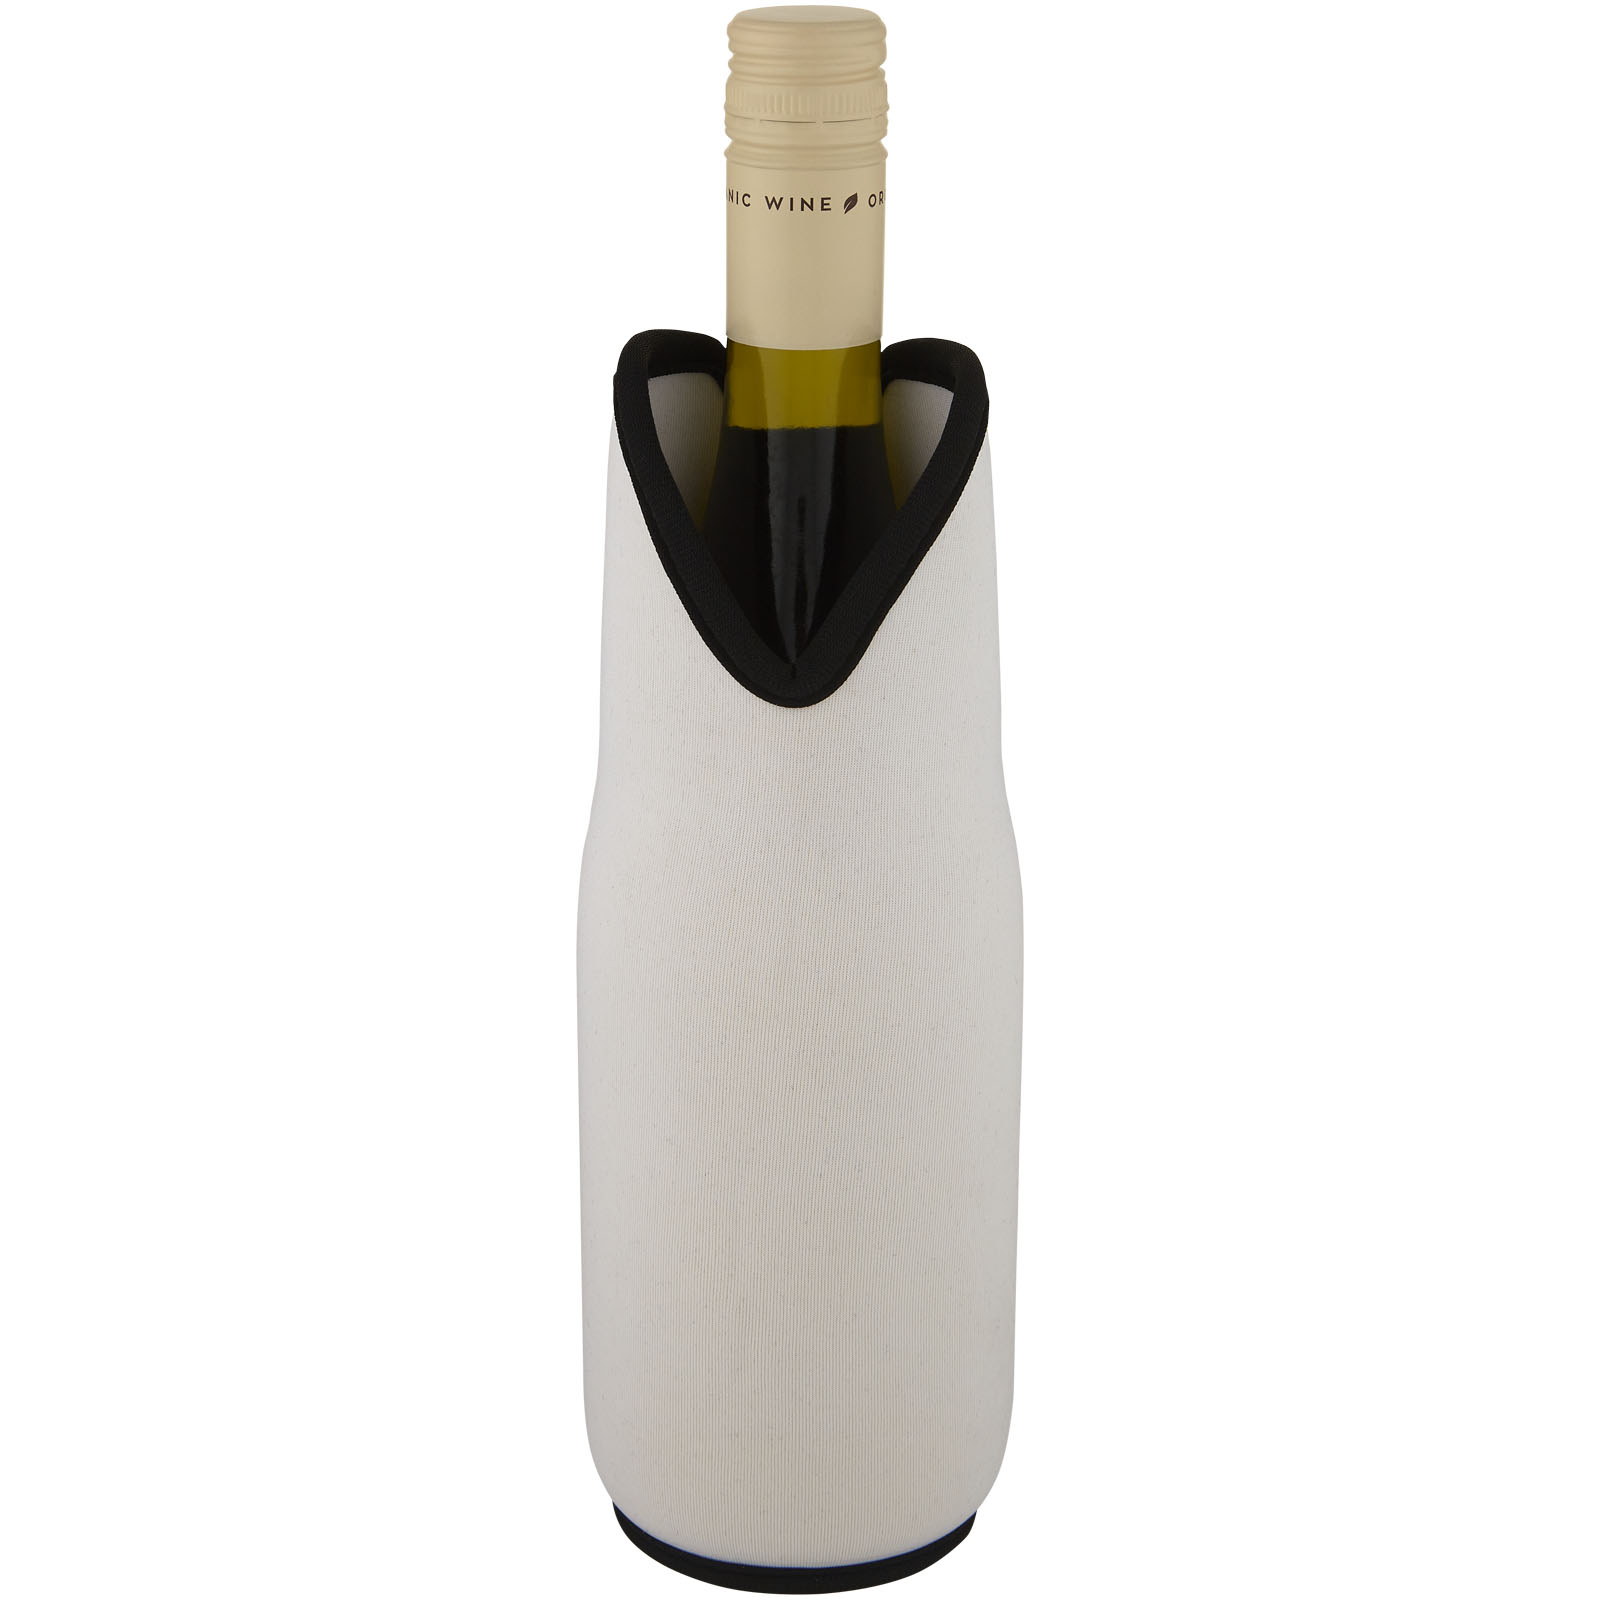 Accessoires pour le vin publicitaires - Manchon Noun en néoprène recyclé pour bouteille de vin - 3